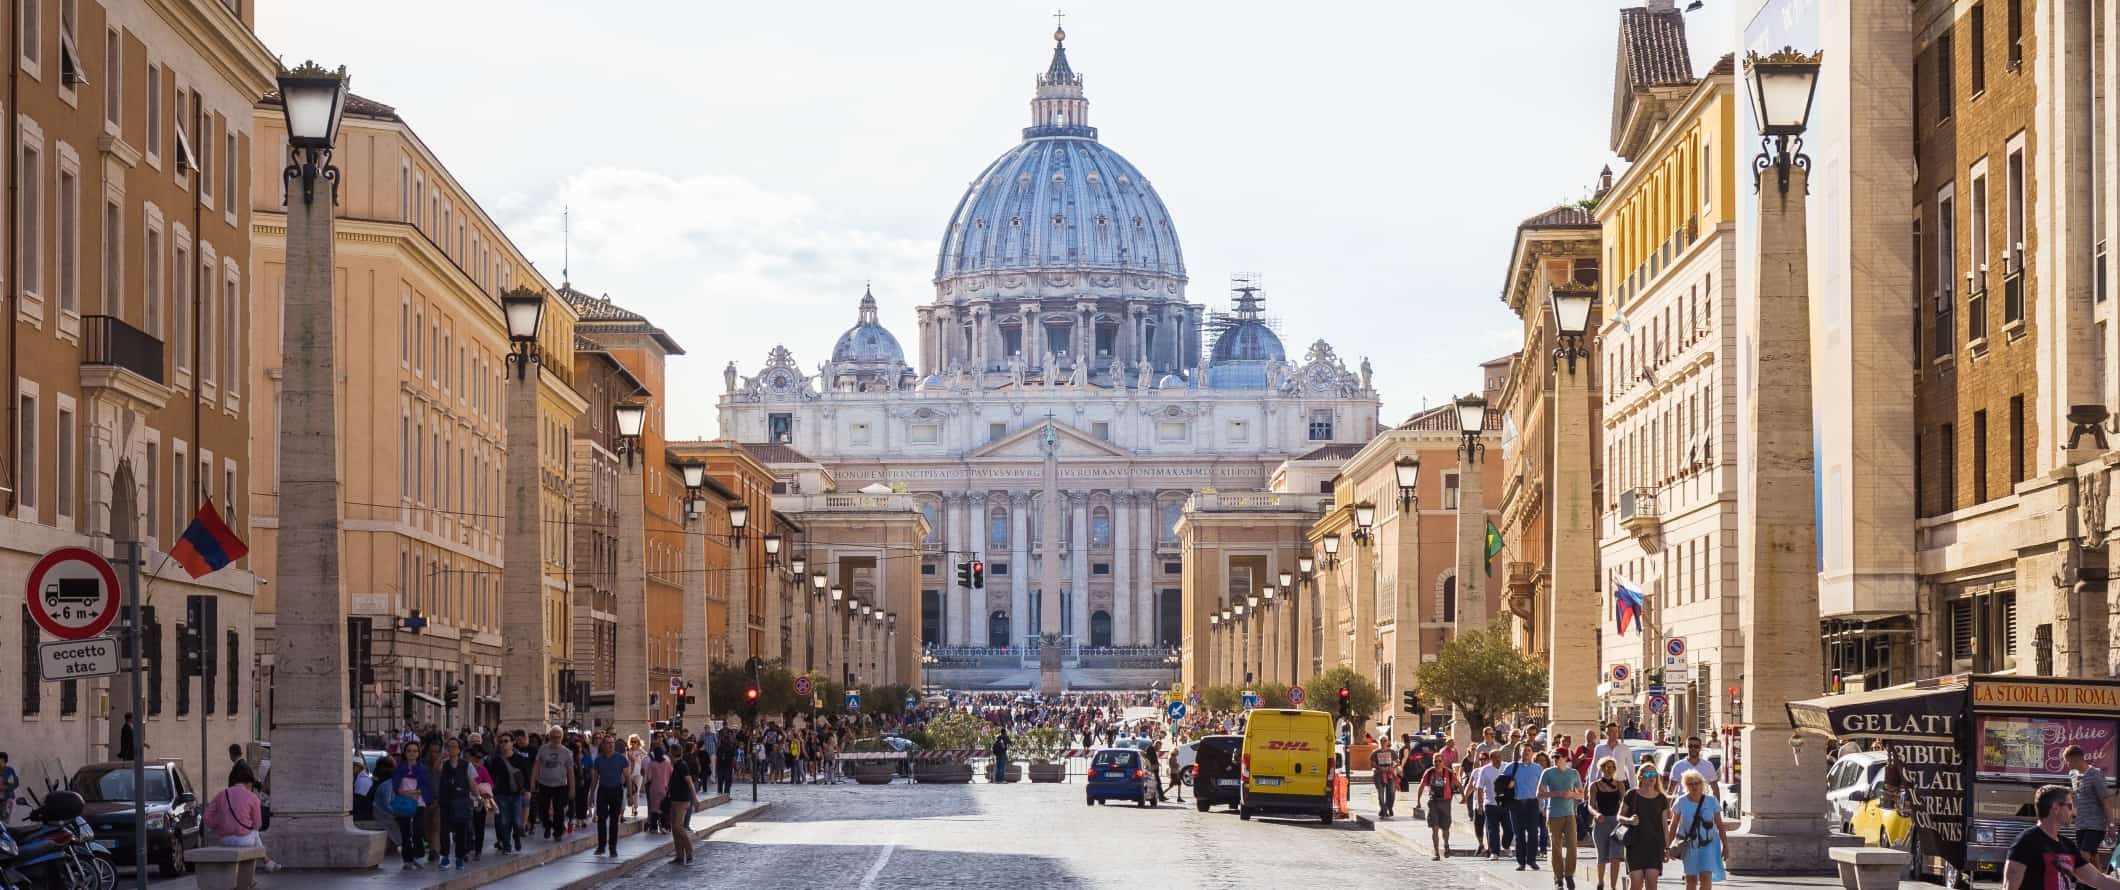 Rua larga cheia de gente com uma basílica no final em Roma, Itália